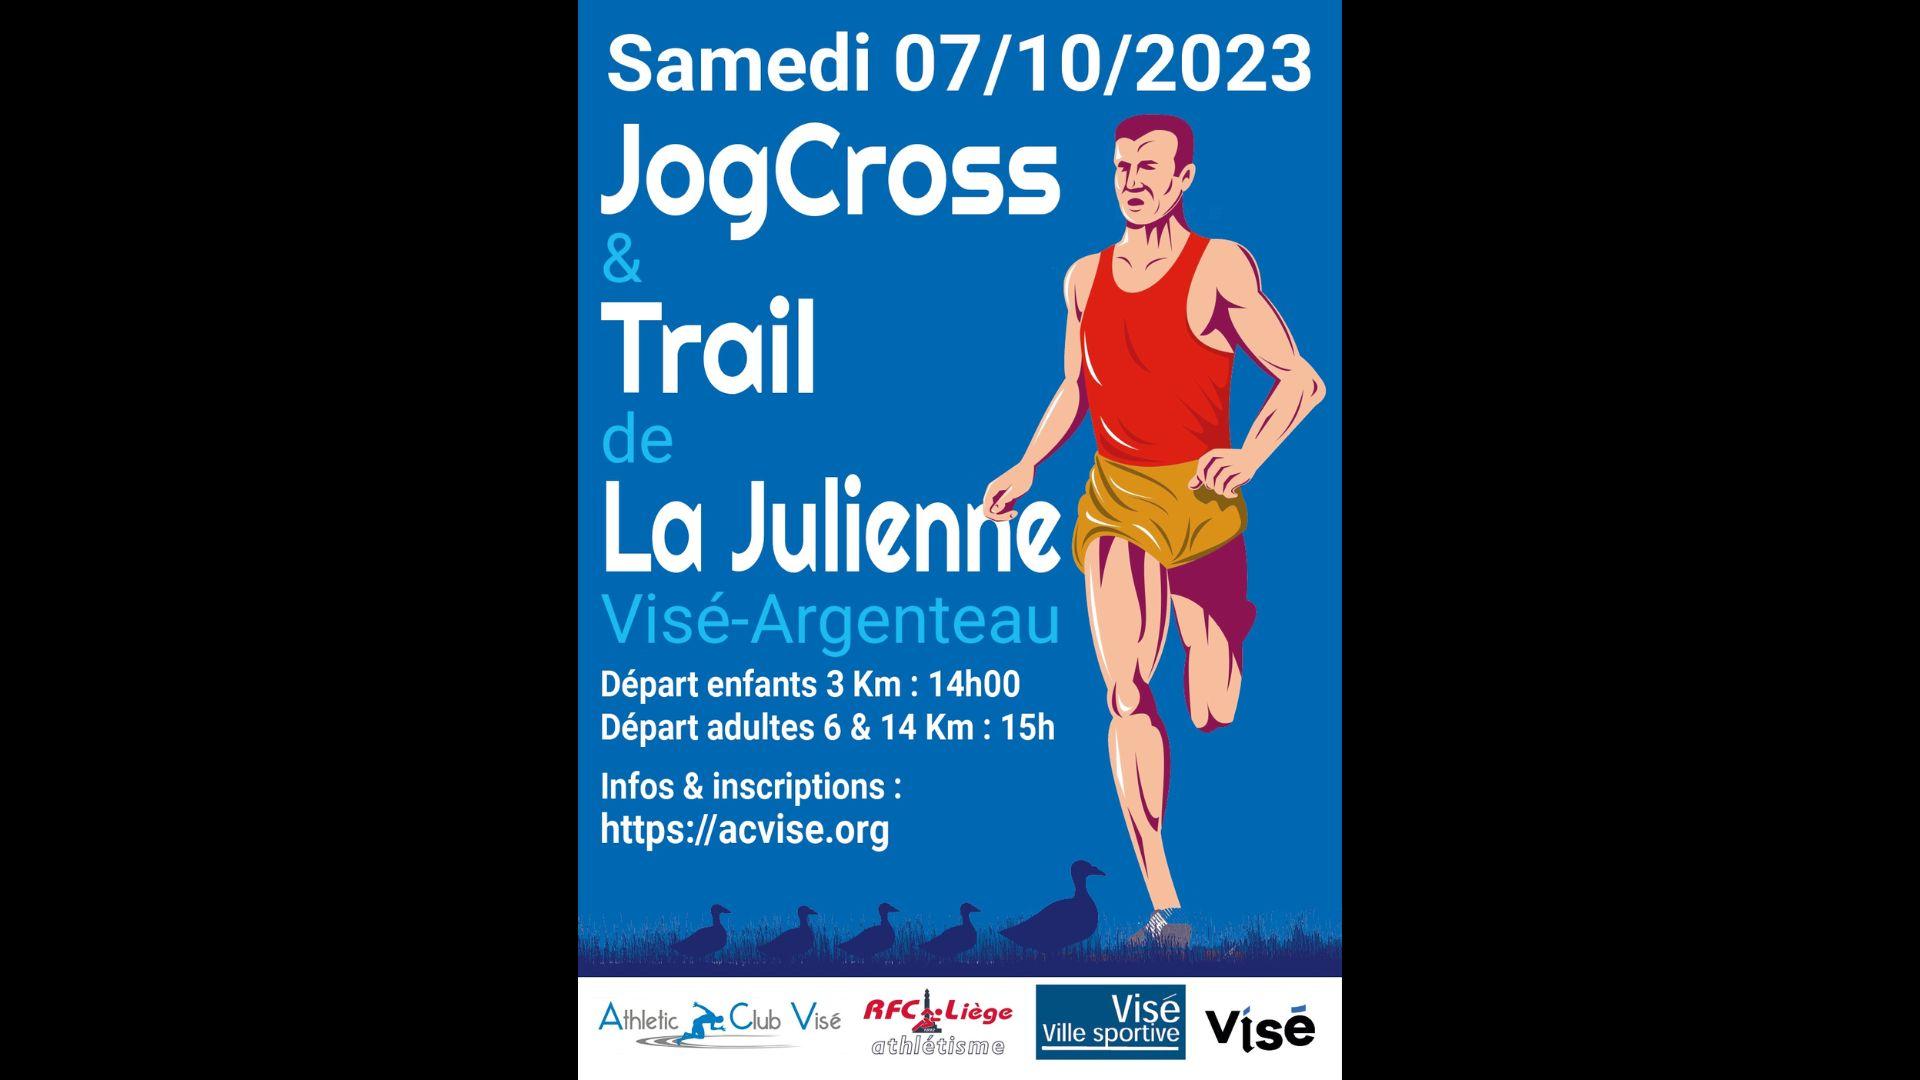 JogCross - Trail de La Julienne